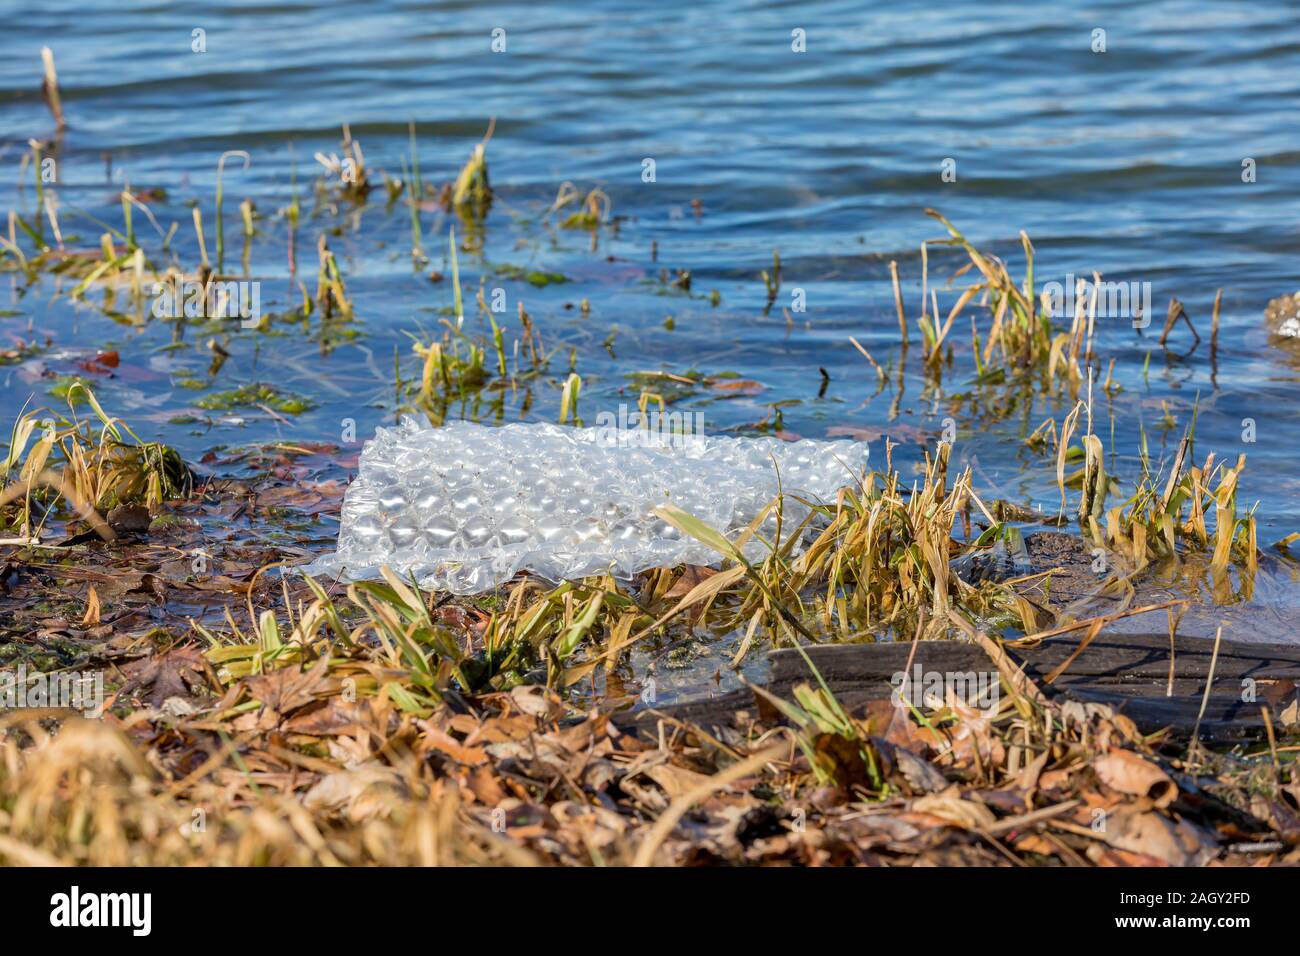 La bolla di plastica avvolgere galleggianti in acque blu del lago. Concetto di inquinamento delle acque, il littering e riciclaggio Foto Stock